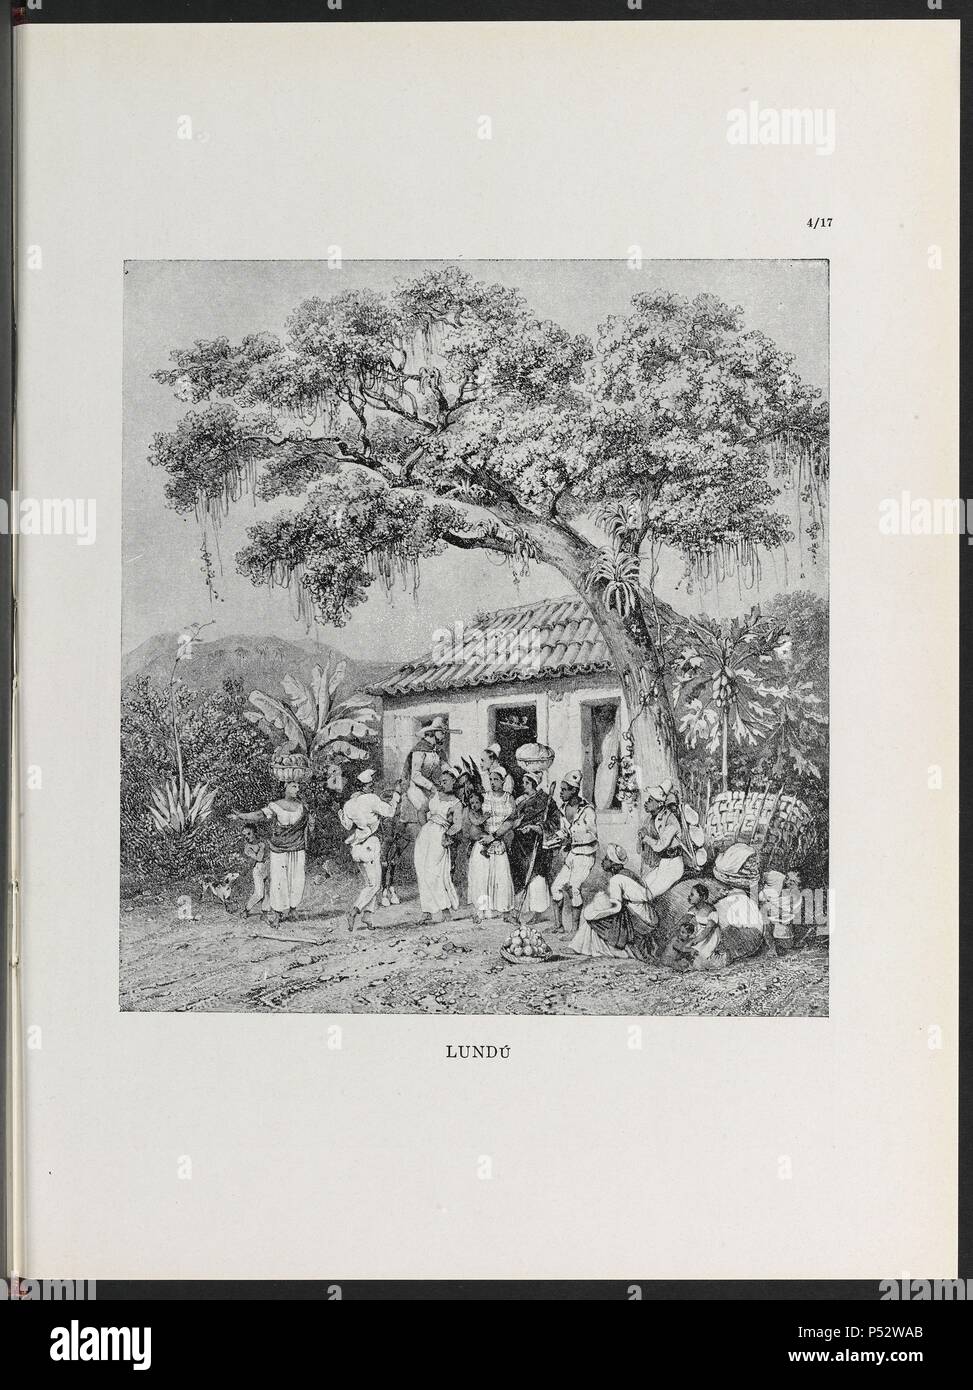 VIAGEM PINTORESCA ATRAVES DO BRASIL, lundu, lámina 96, 1835. Autor: Johann Moritz Rugendas (1802-1858). Foto de stock